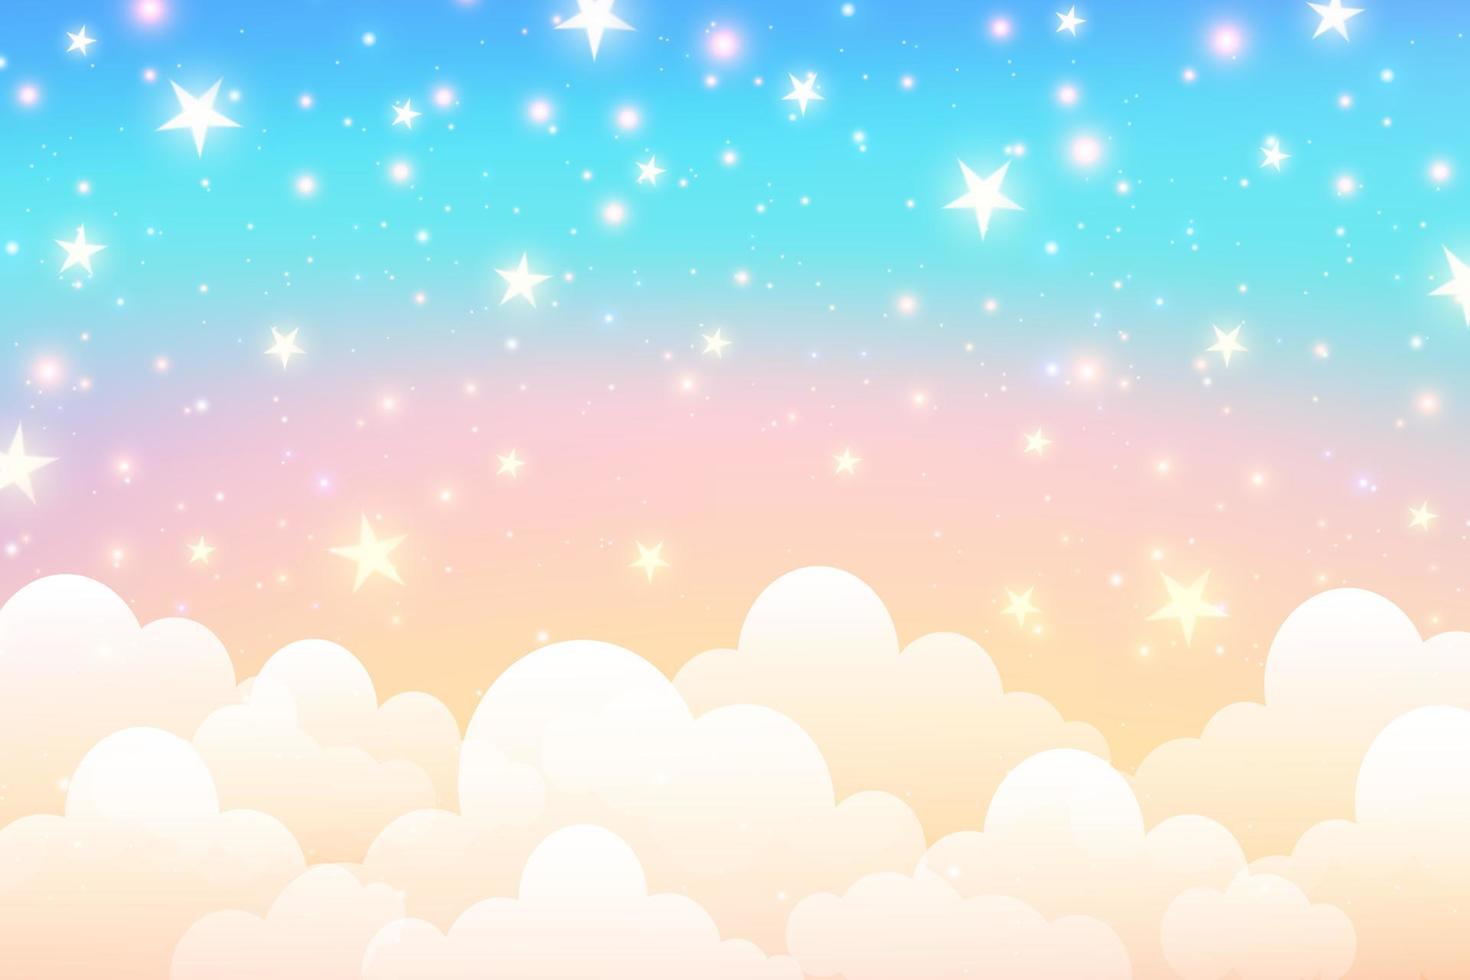 bewolkt lucht achtergrond. eenhoorn fantasie pastel heelal. regenboog schattig behang. pluizig magie roze landschap. vector illustratie